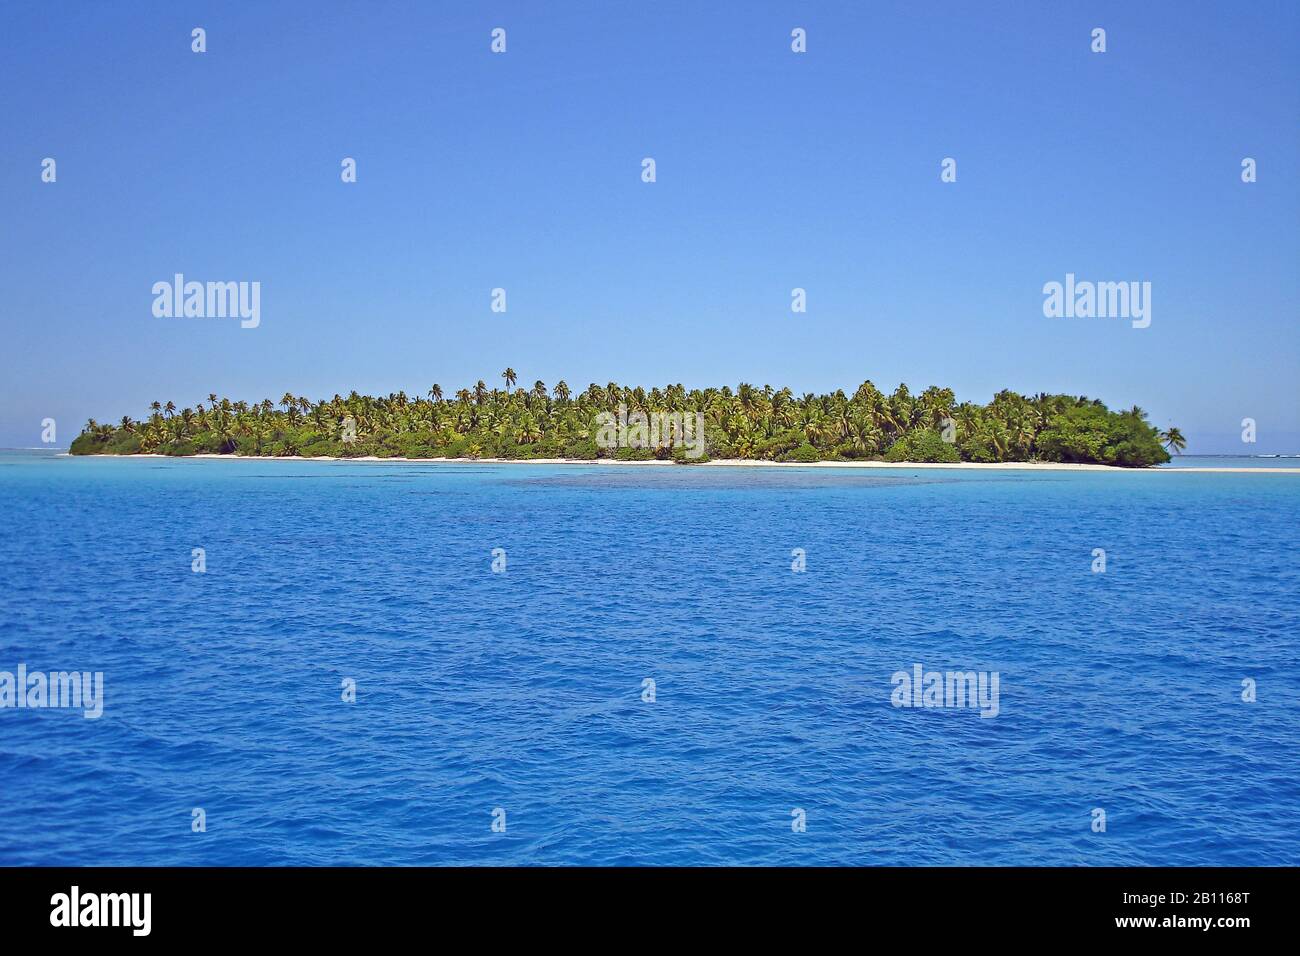 Tahanea Atoll in the Tuamotu Archipelago part of French Polynesia, Polynesia Stock Photo